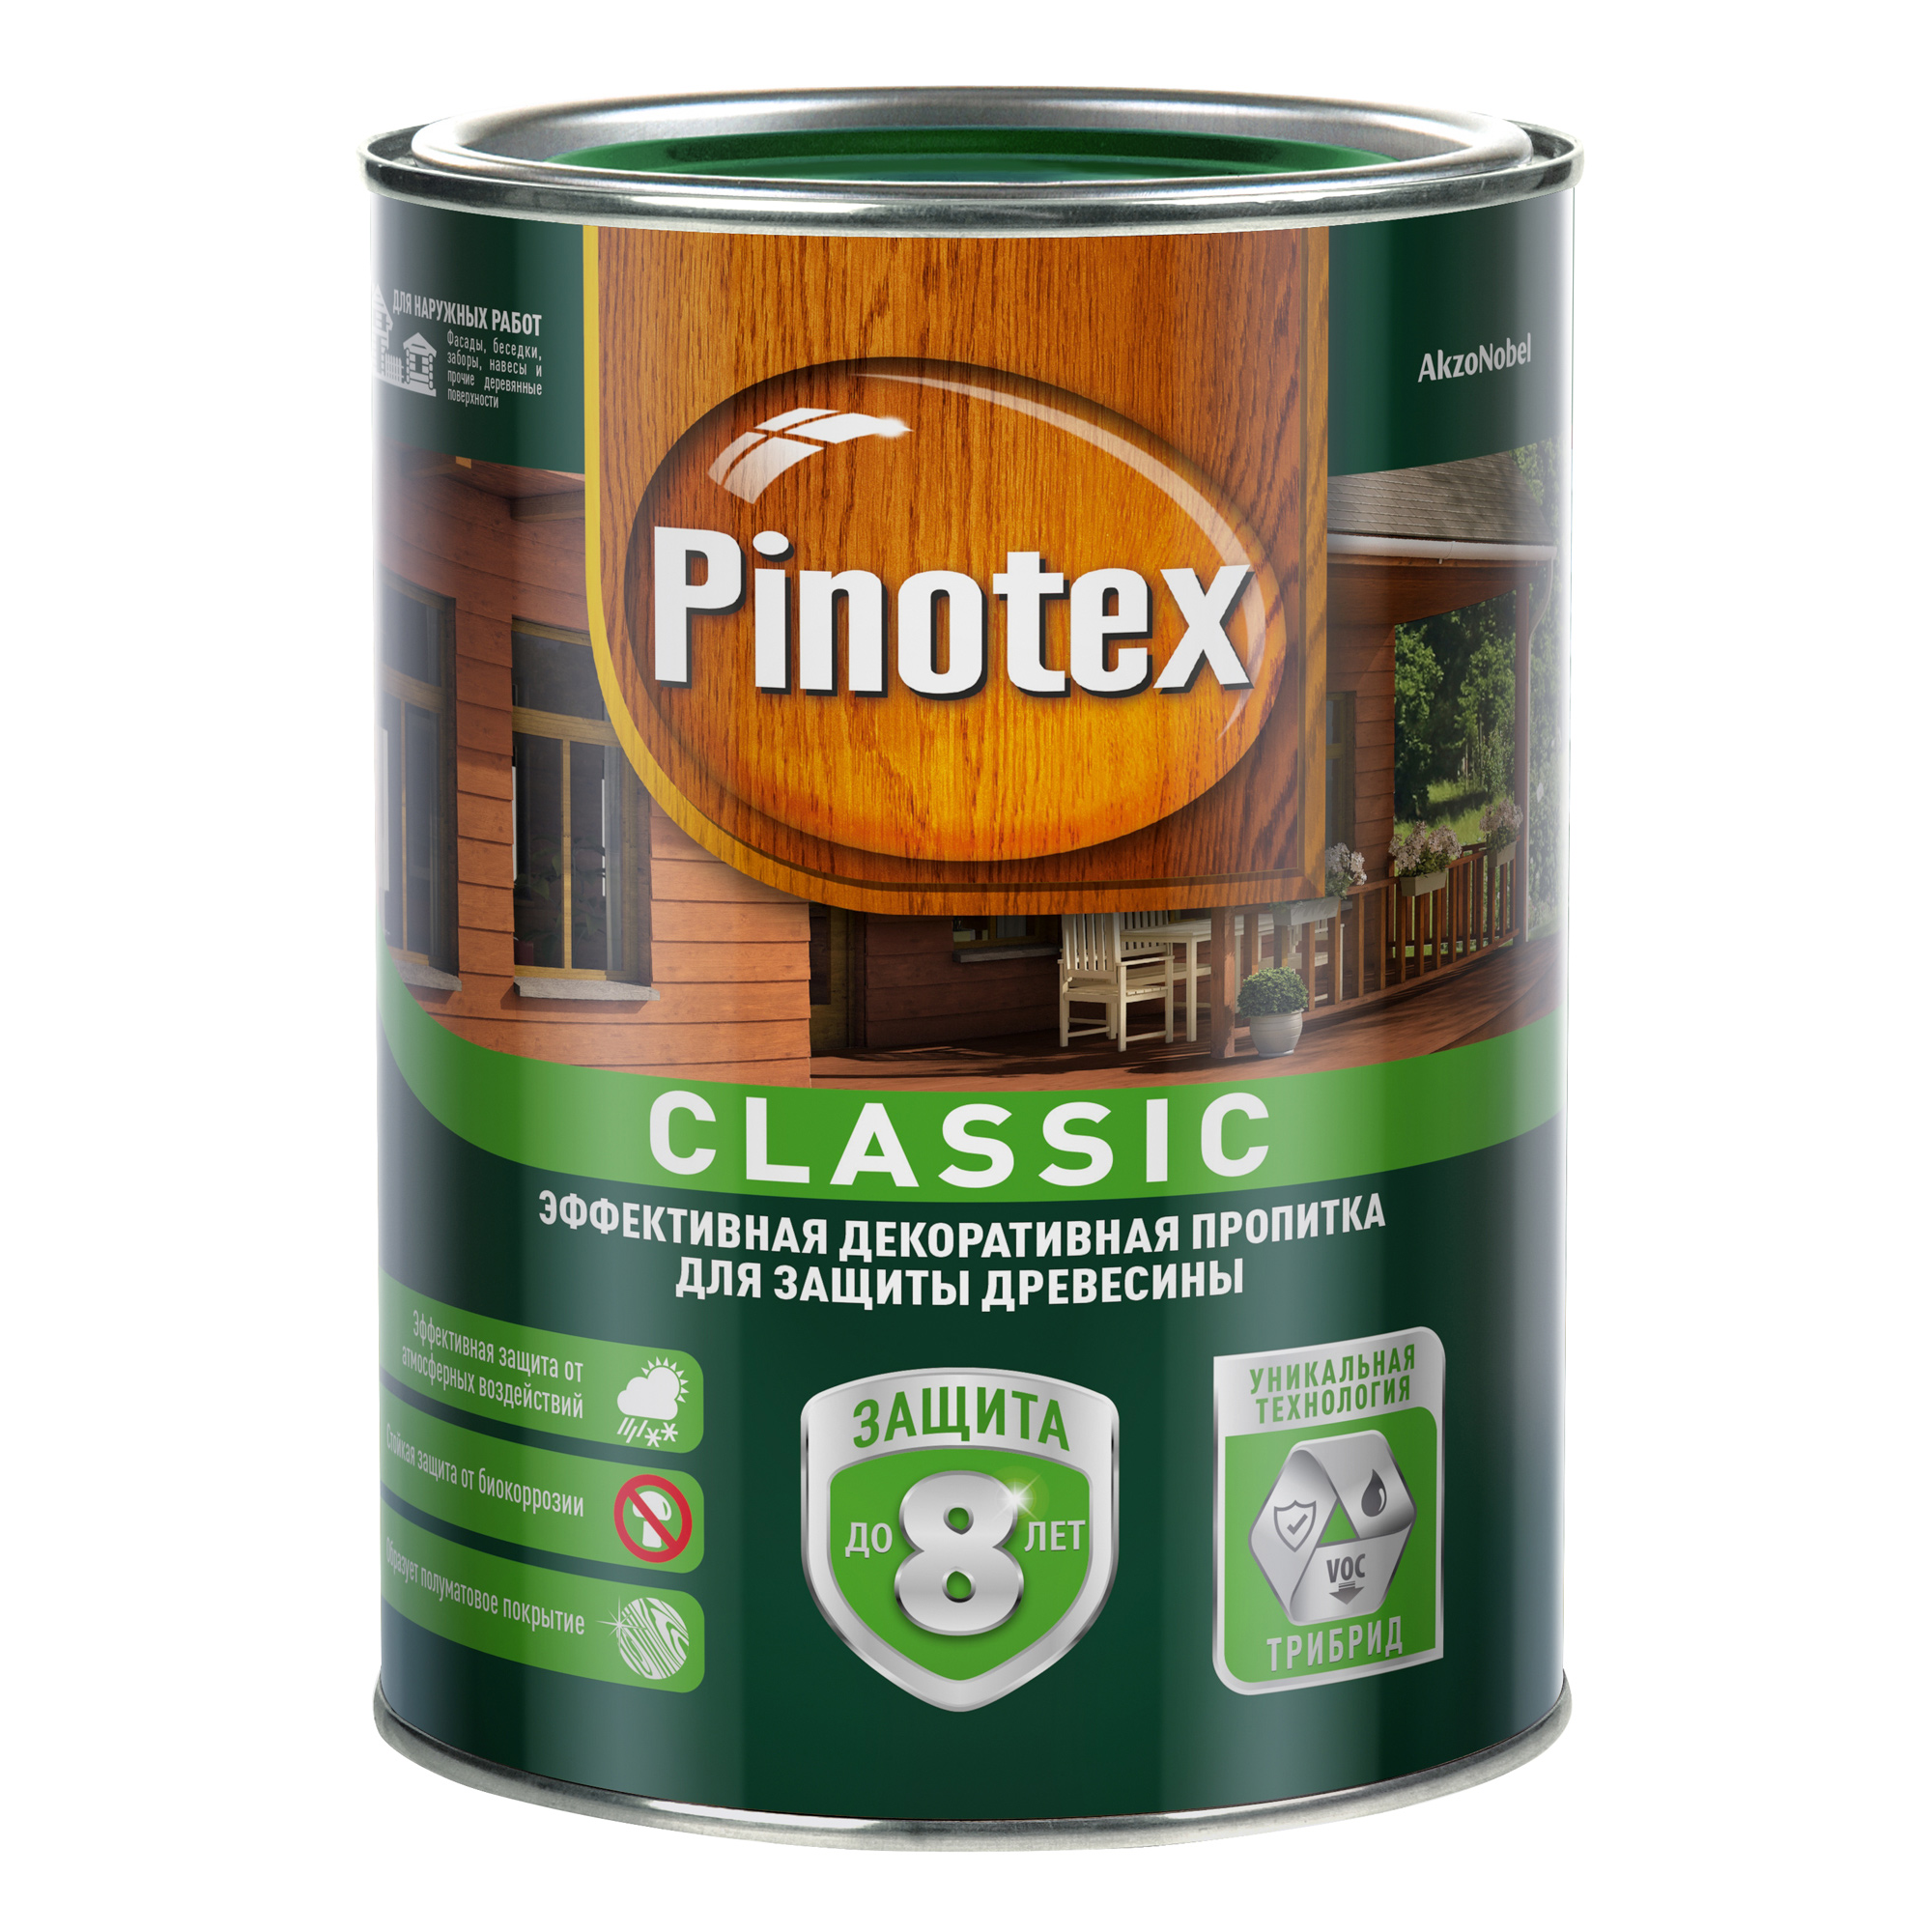 Пропитка Pinotex classic сосна  1л